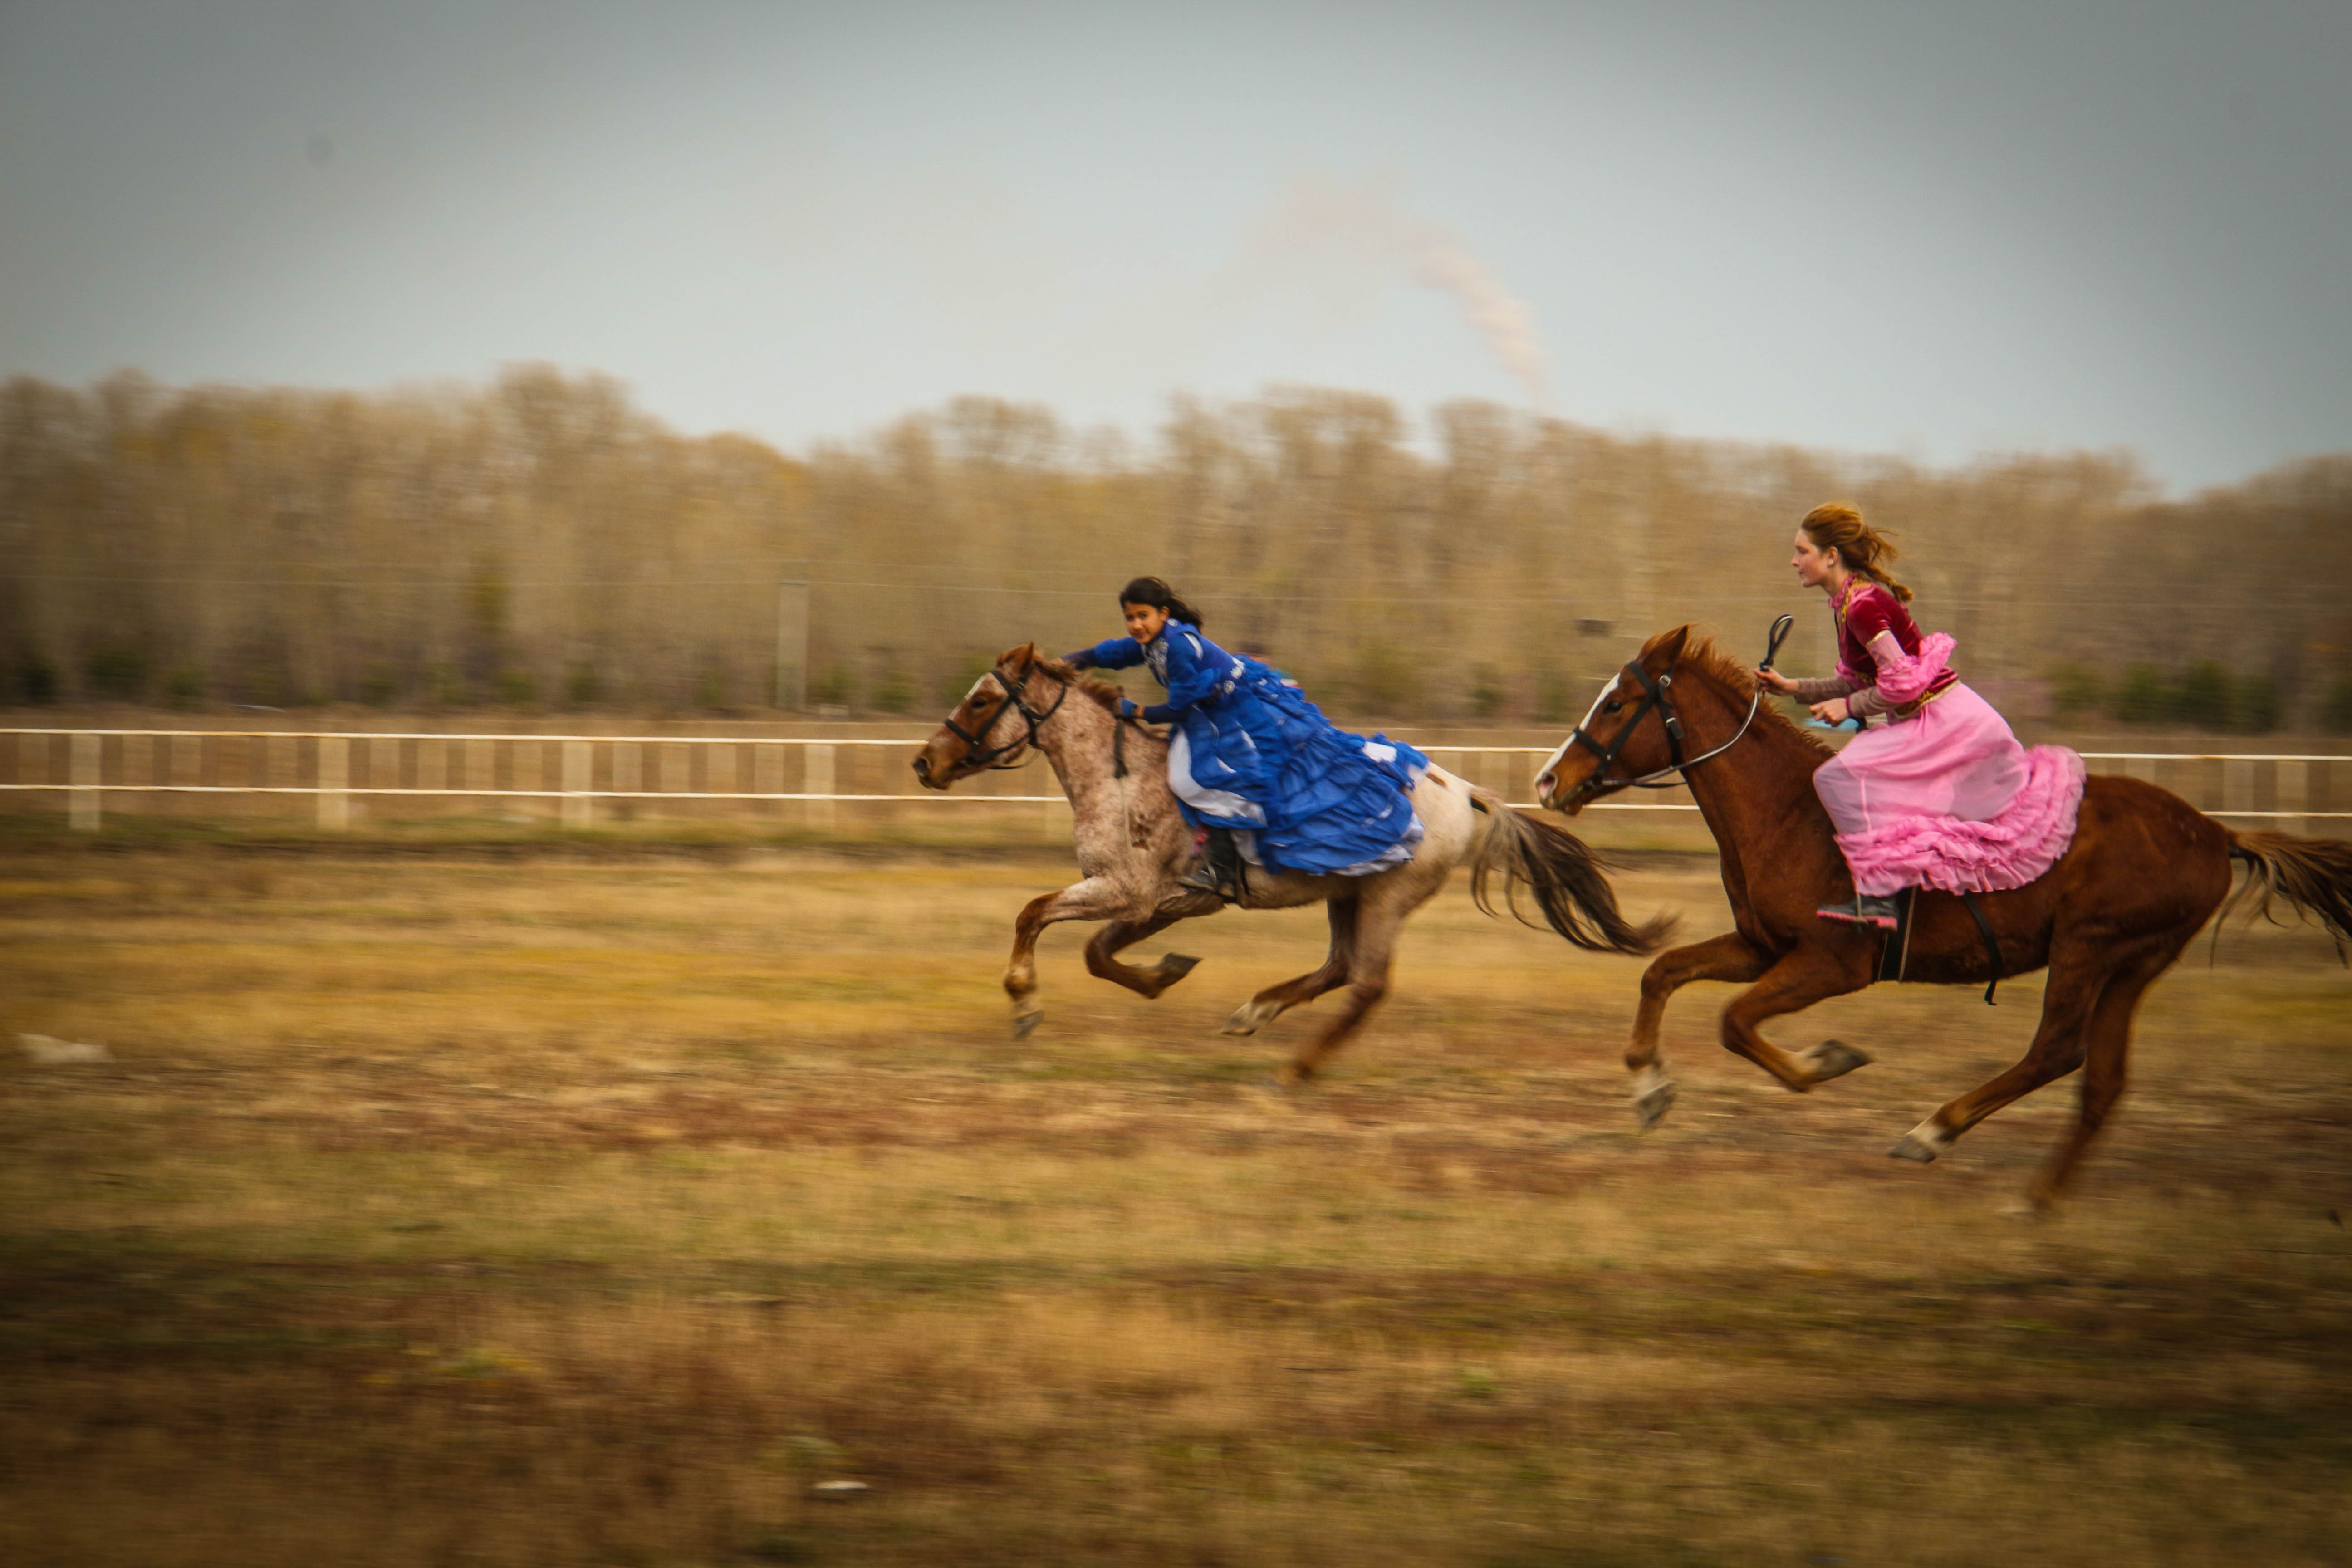 Қыз қуу ойыны. Конный спорт байга. Казахские игры на лошадях. Конный спорт в Казахстане. Наурыз скачки.